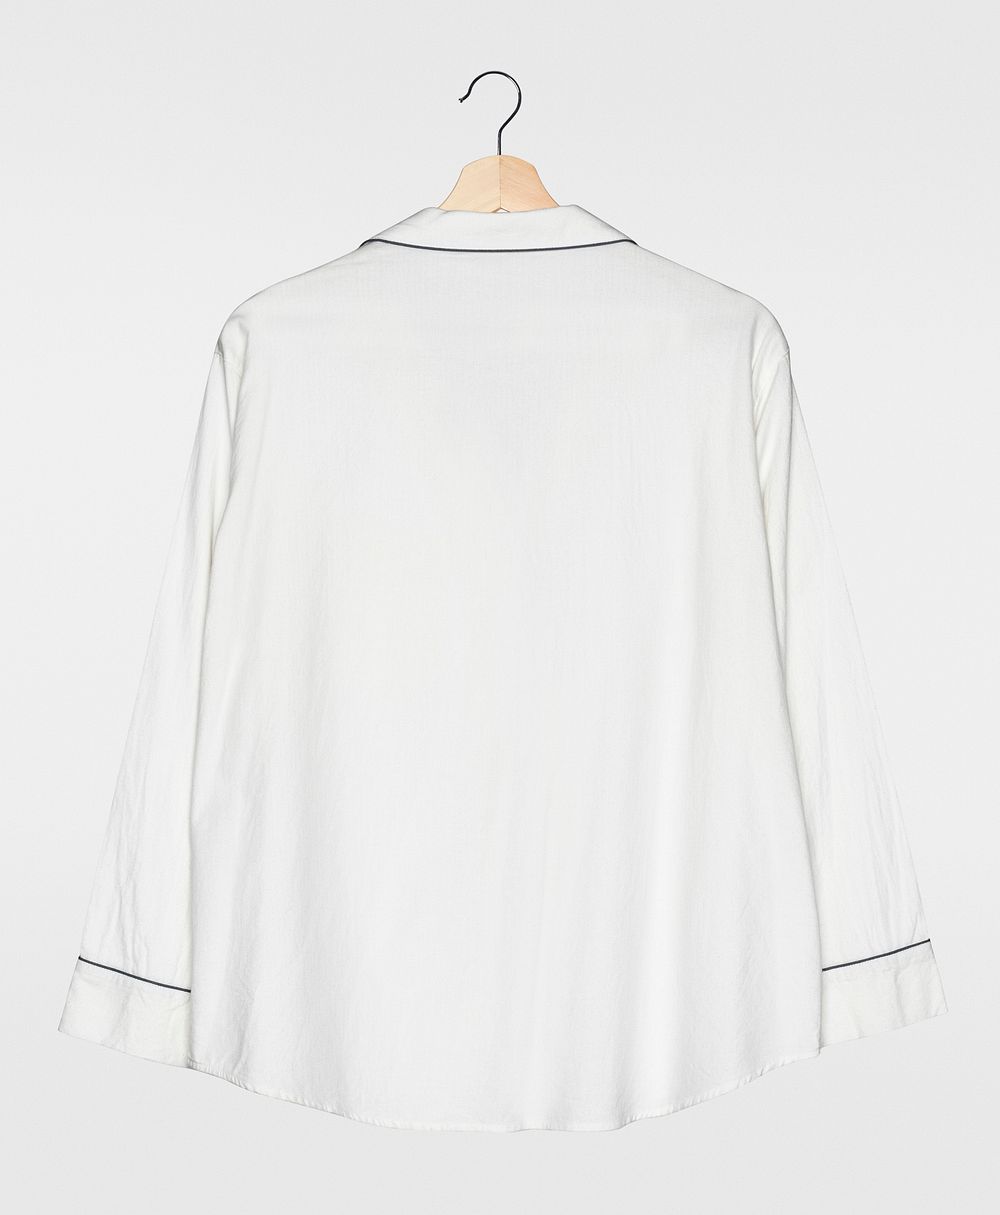 White pajama shirt rear view simple nightwear apparel